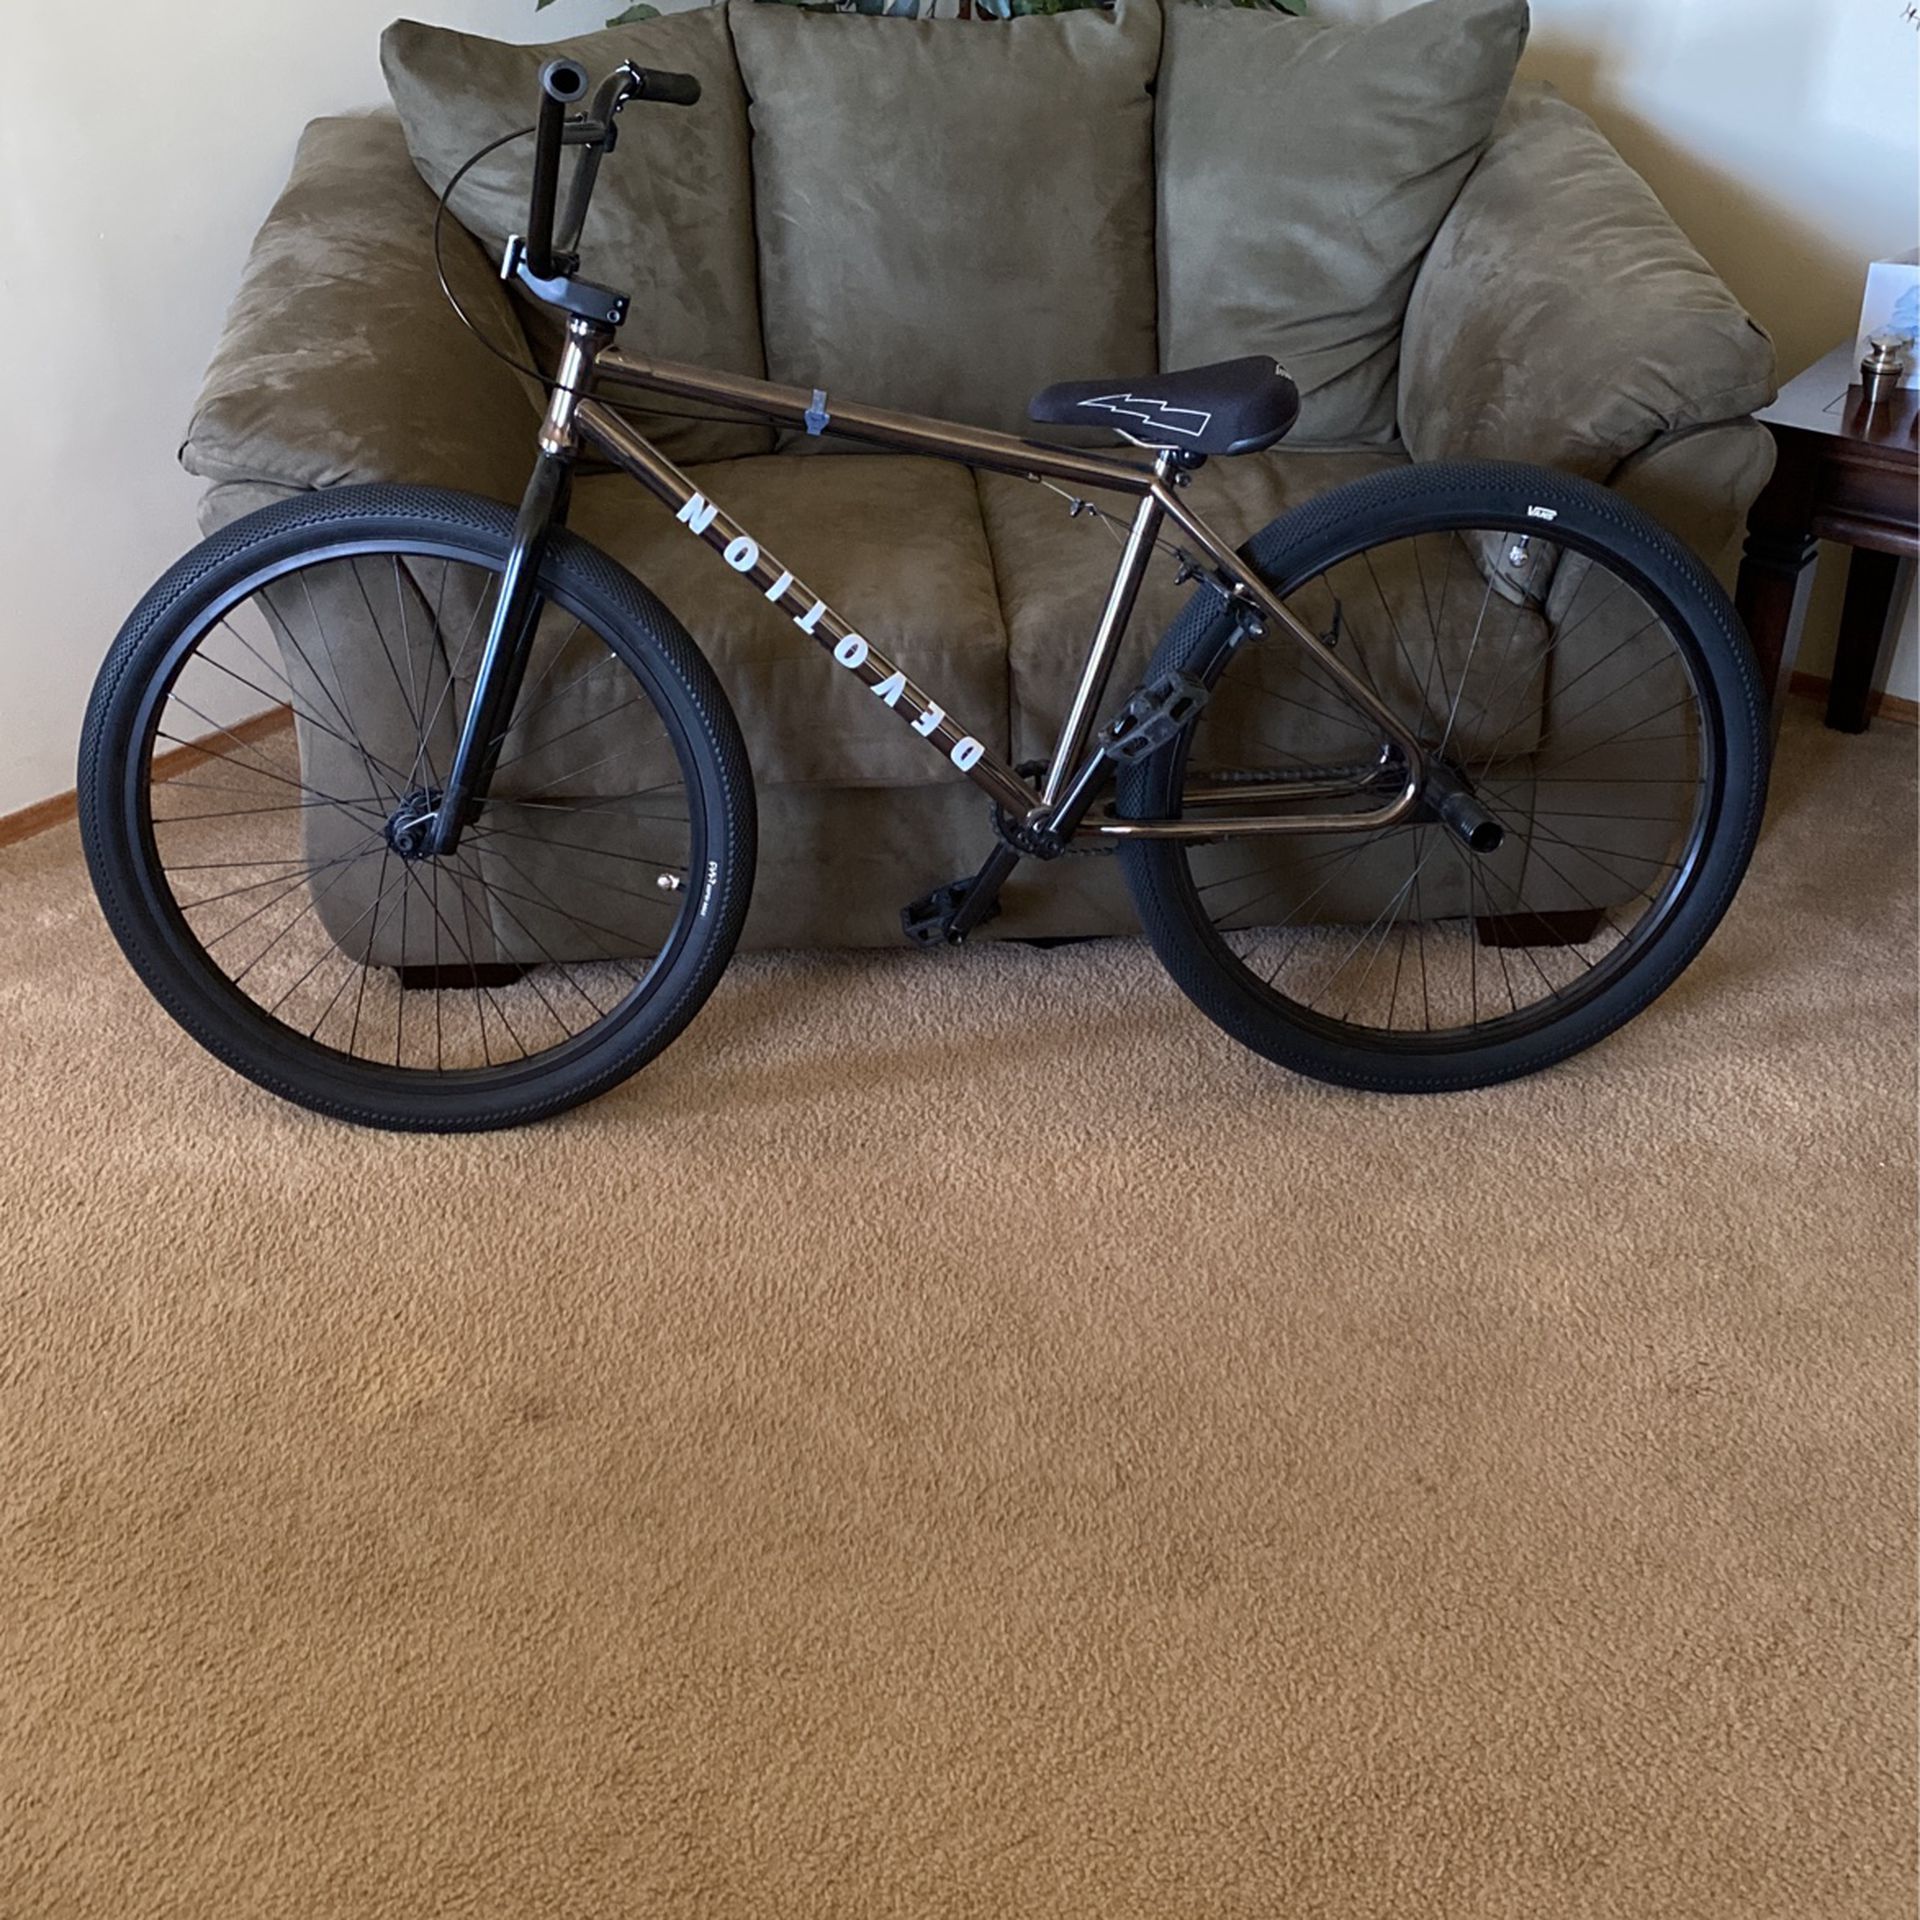 27 inch bmx wheelie bike (devotion vans 27 inch bike)